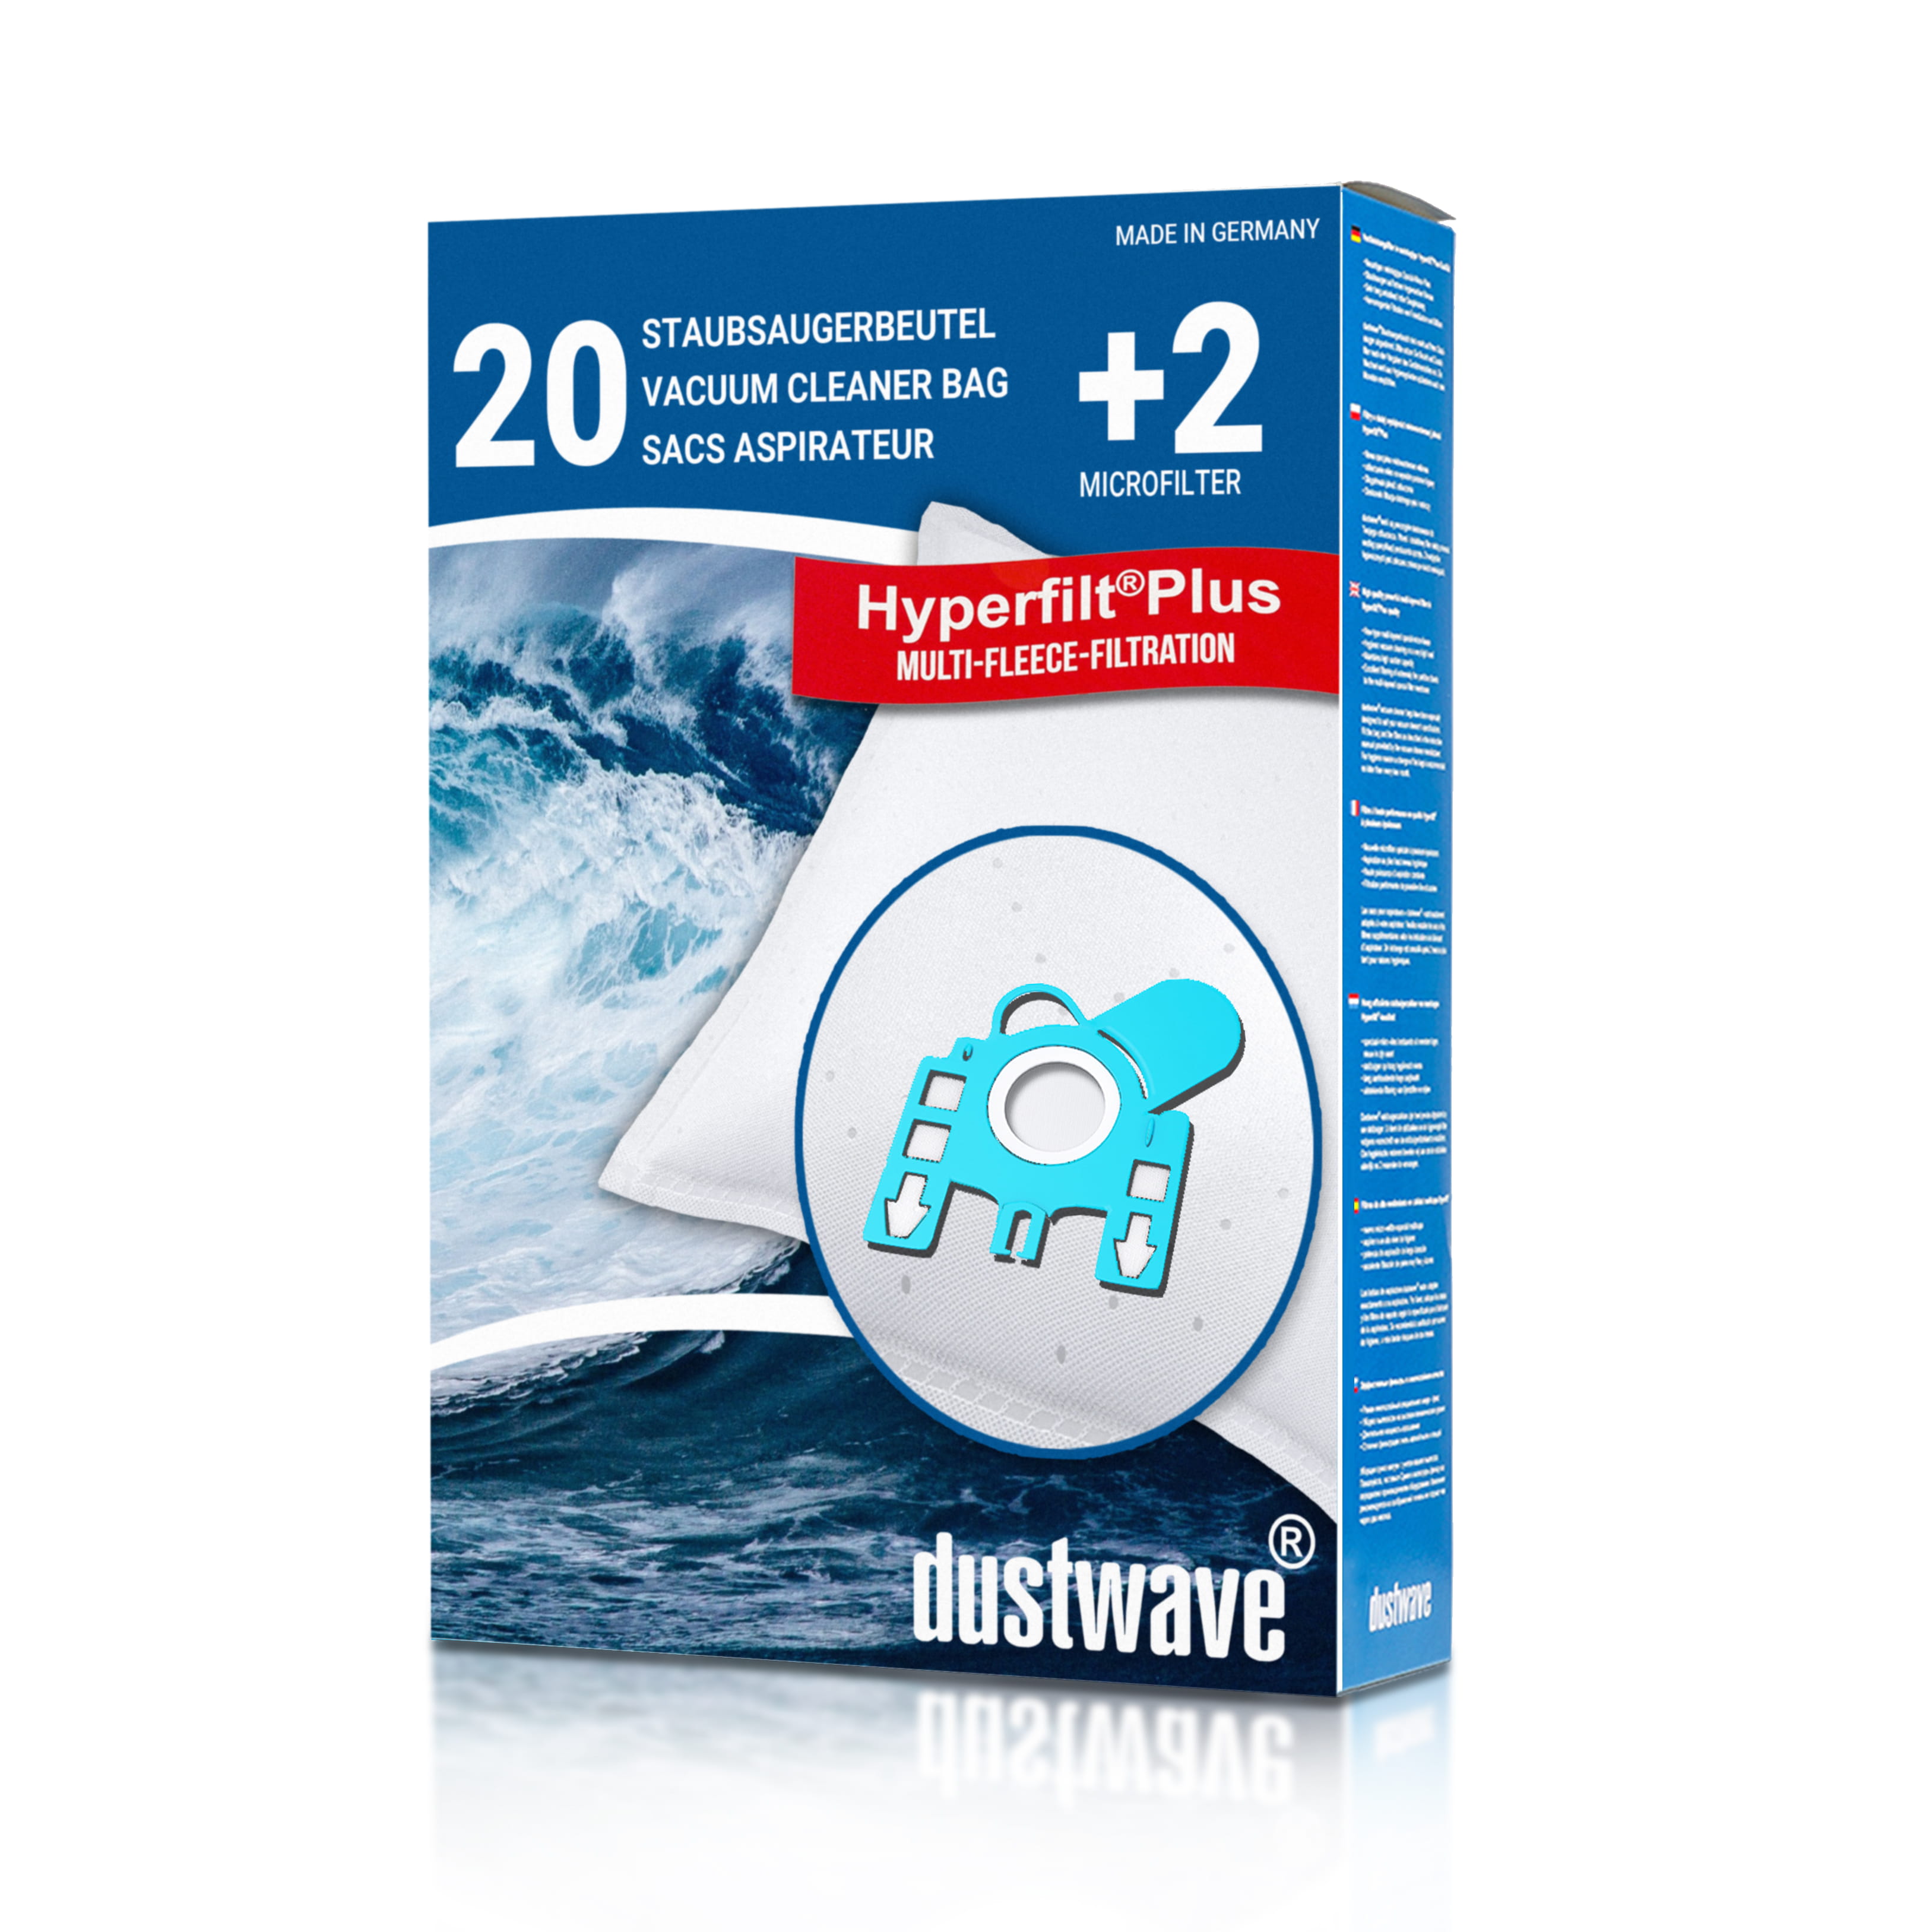 Dustwave® 20 Staubsaugerbeutel für Miele S5210 / S 5210 - hocheffizient, mehrlagiges Mikrovlies mit Hygieneverschluss - Made in Germany